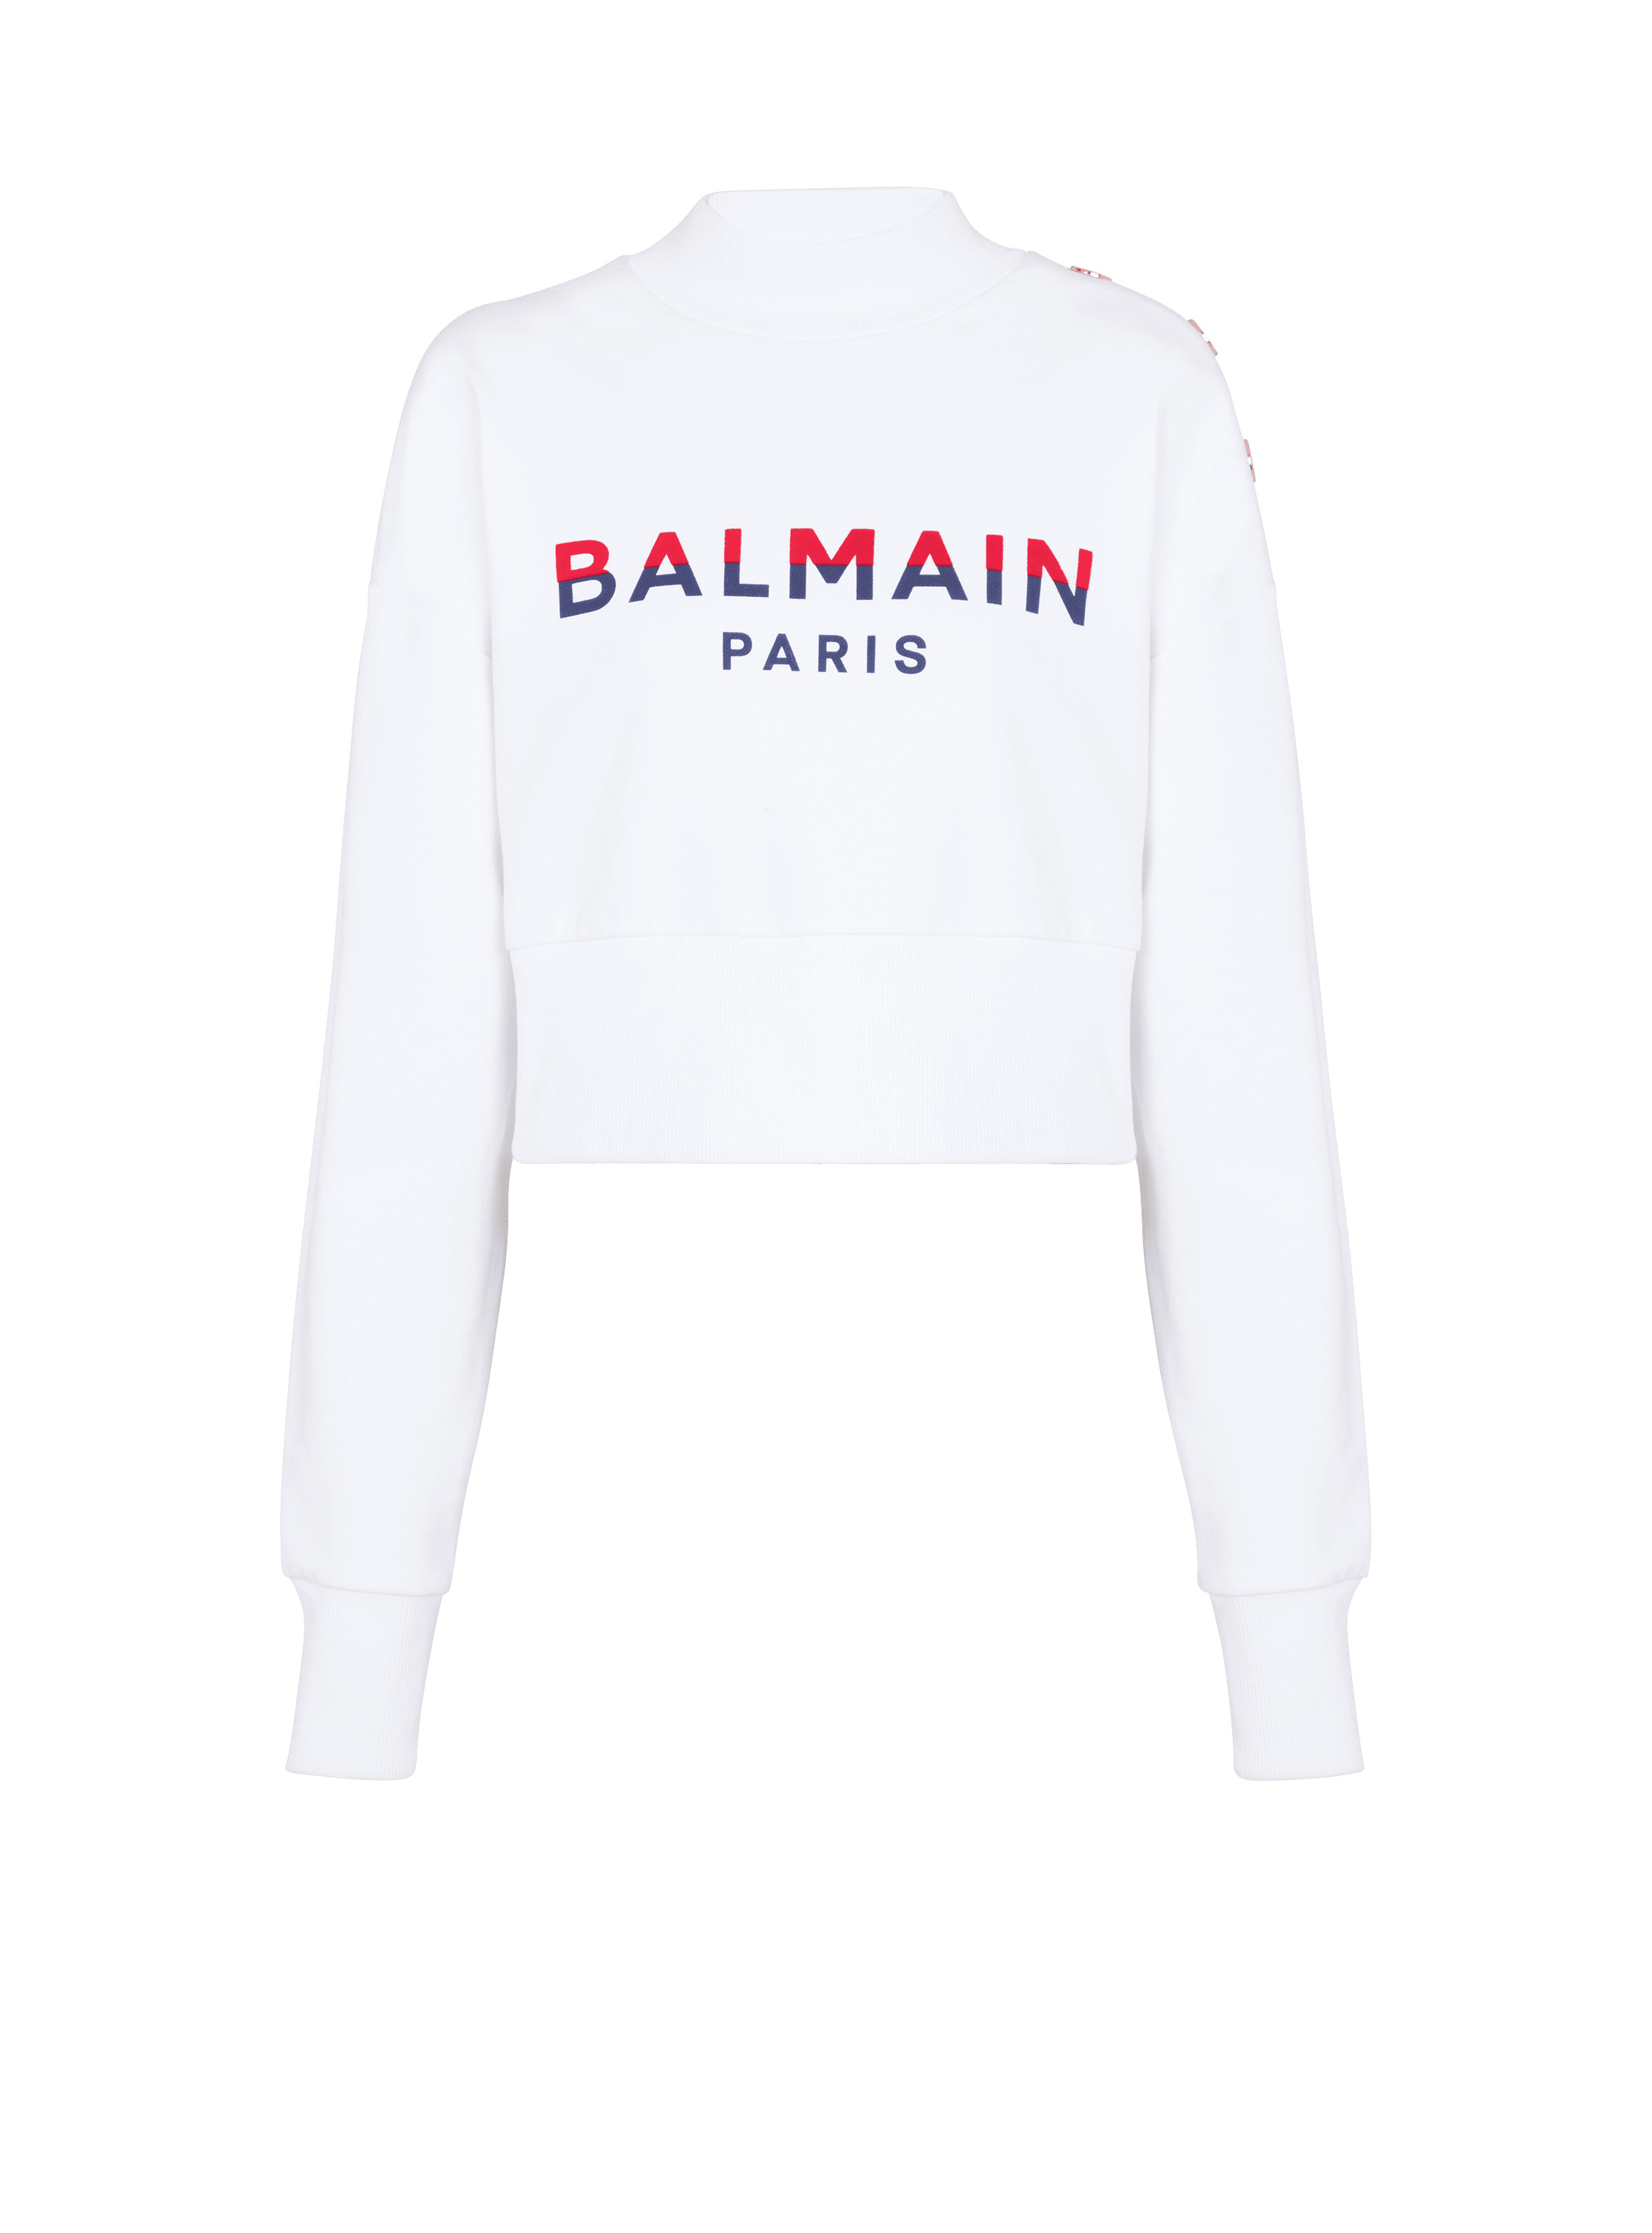 Flocked Balmain Paris cropped sweatshirt, white, hi-res